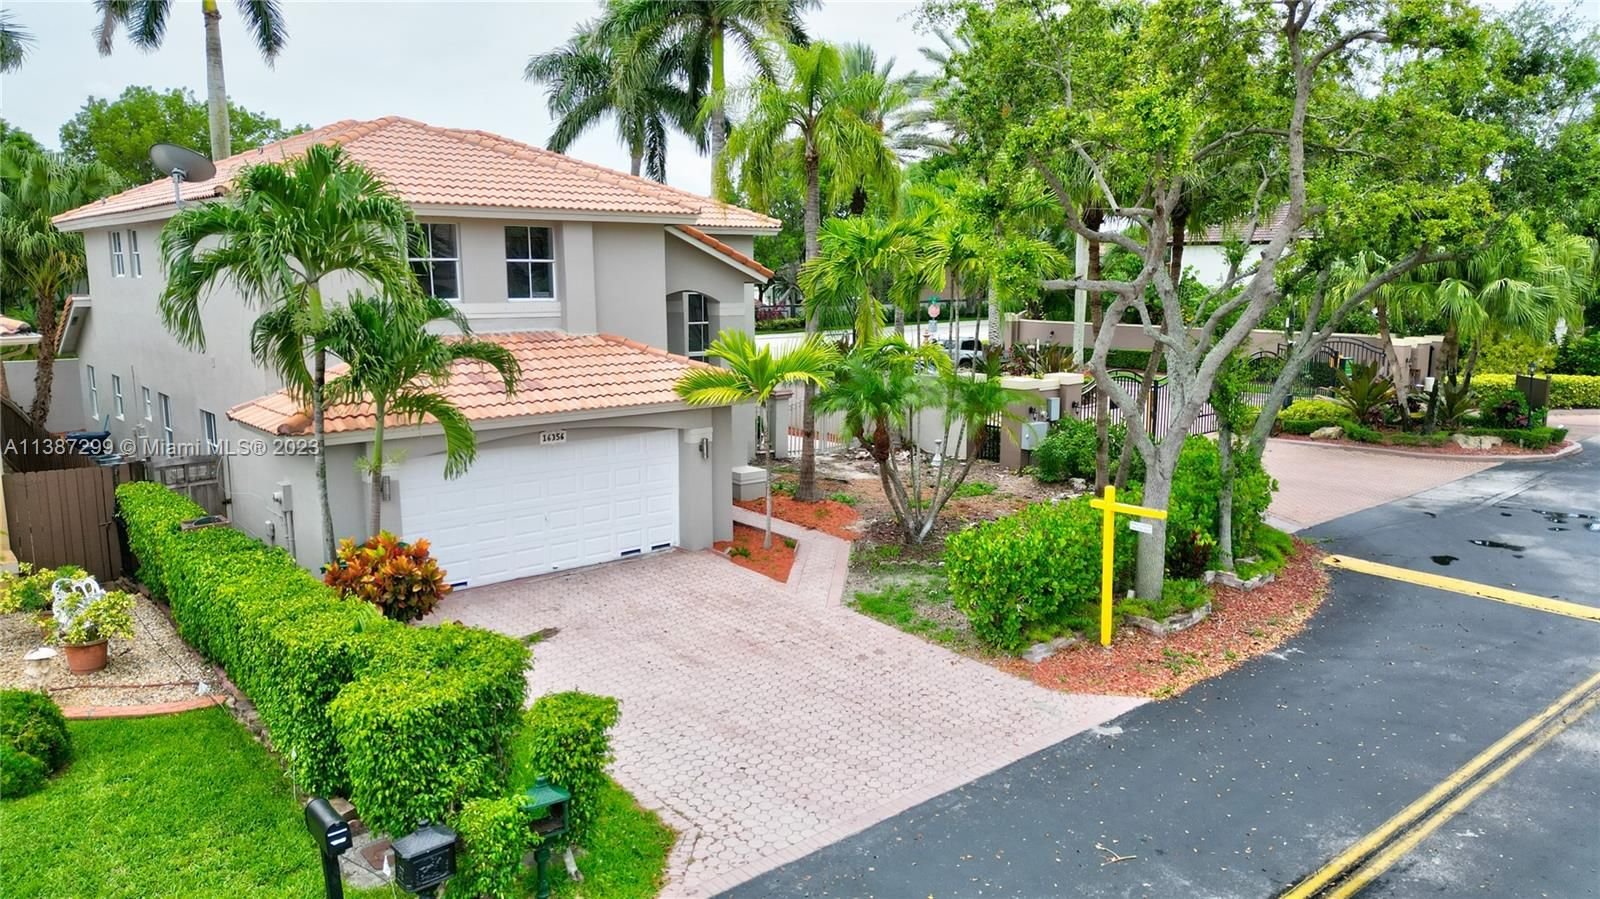 Real estate property located at 16356 95th Ln, Miami-Dade County, Miami, FL